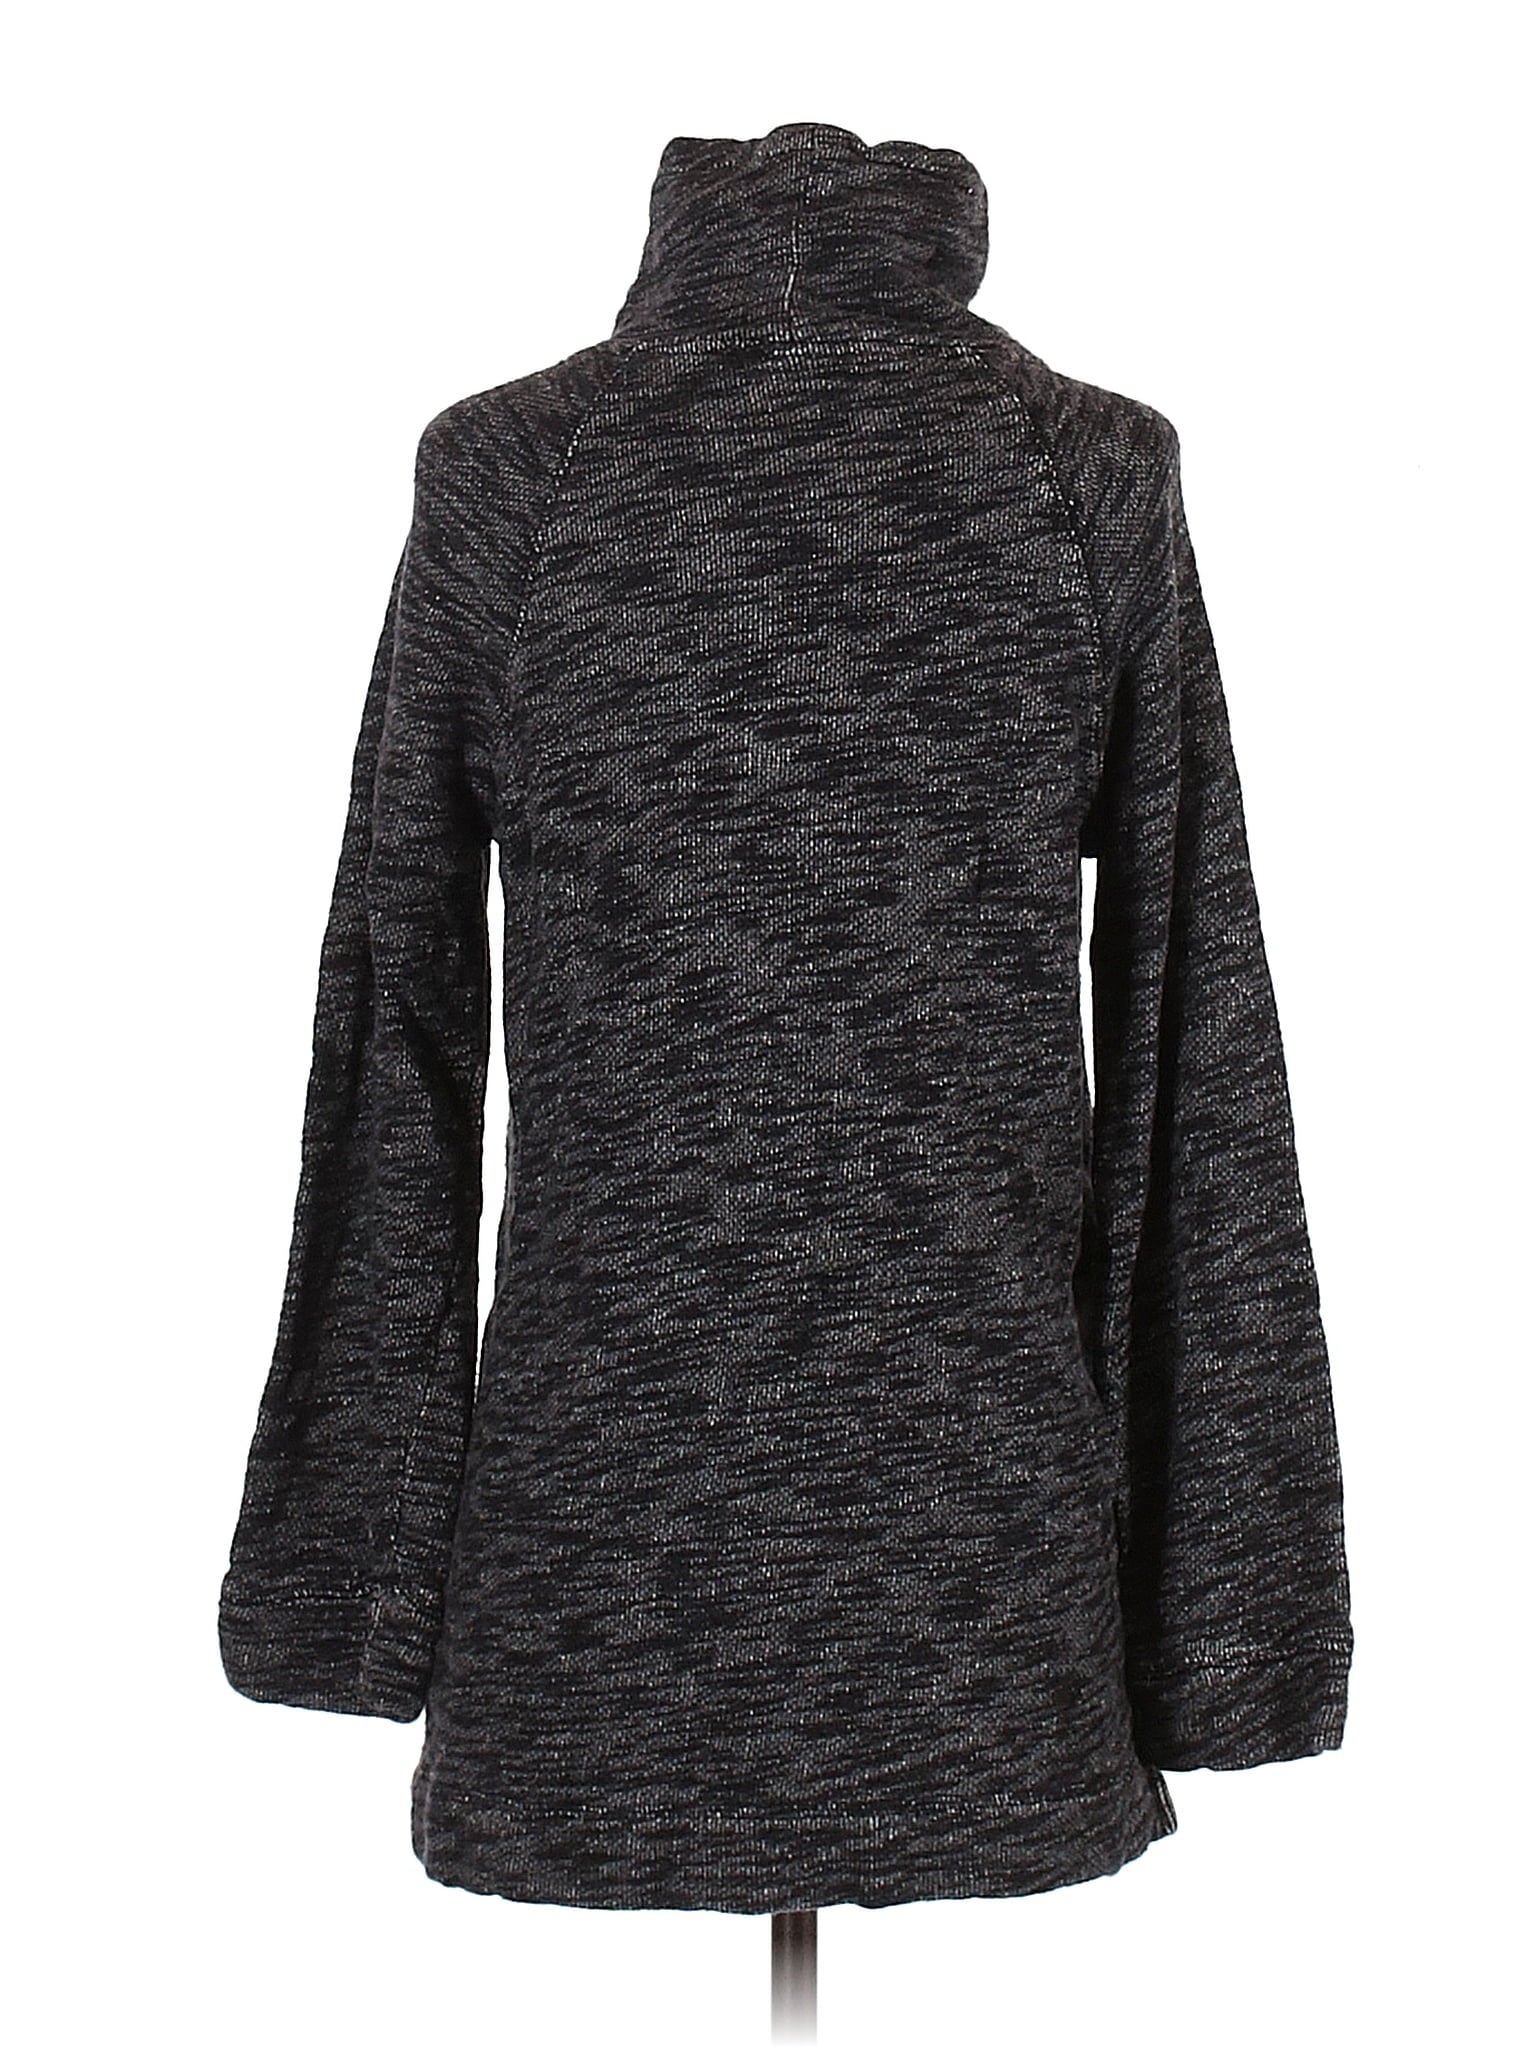 Turtleneck Sweater size - Sm - Med